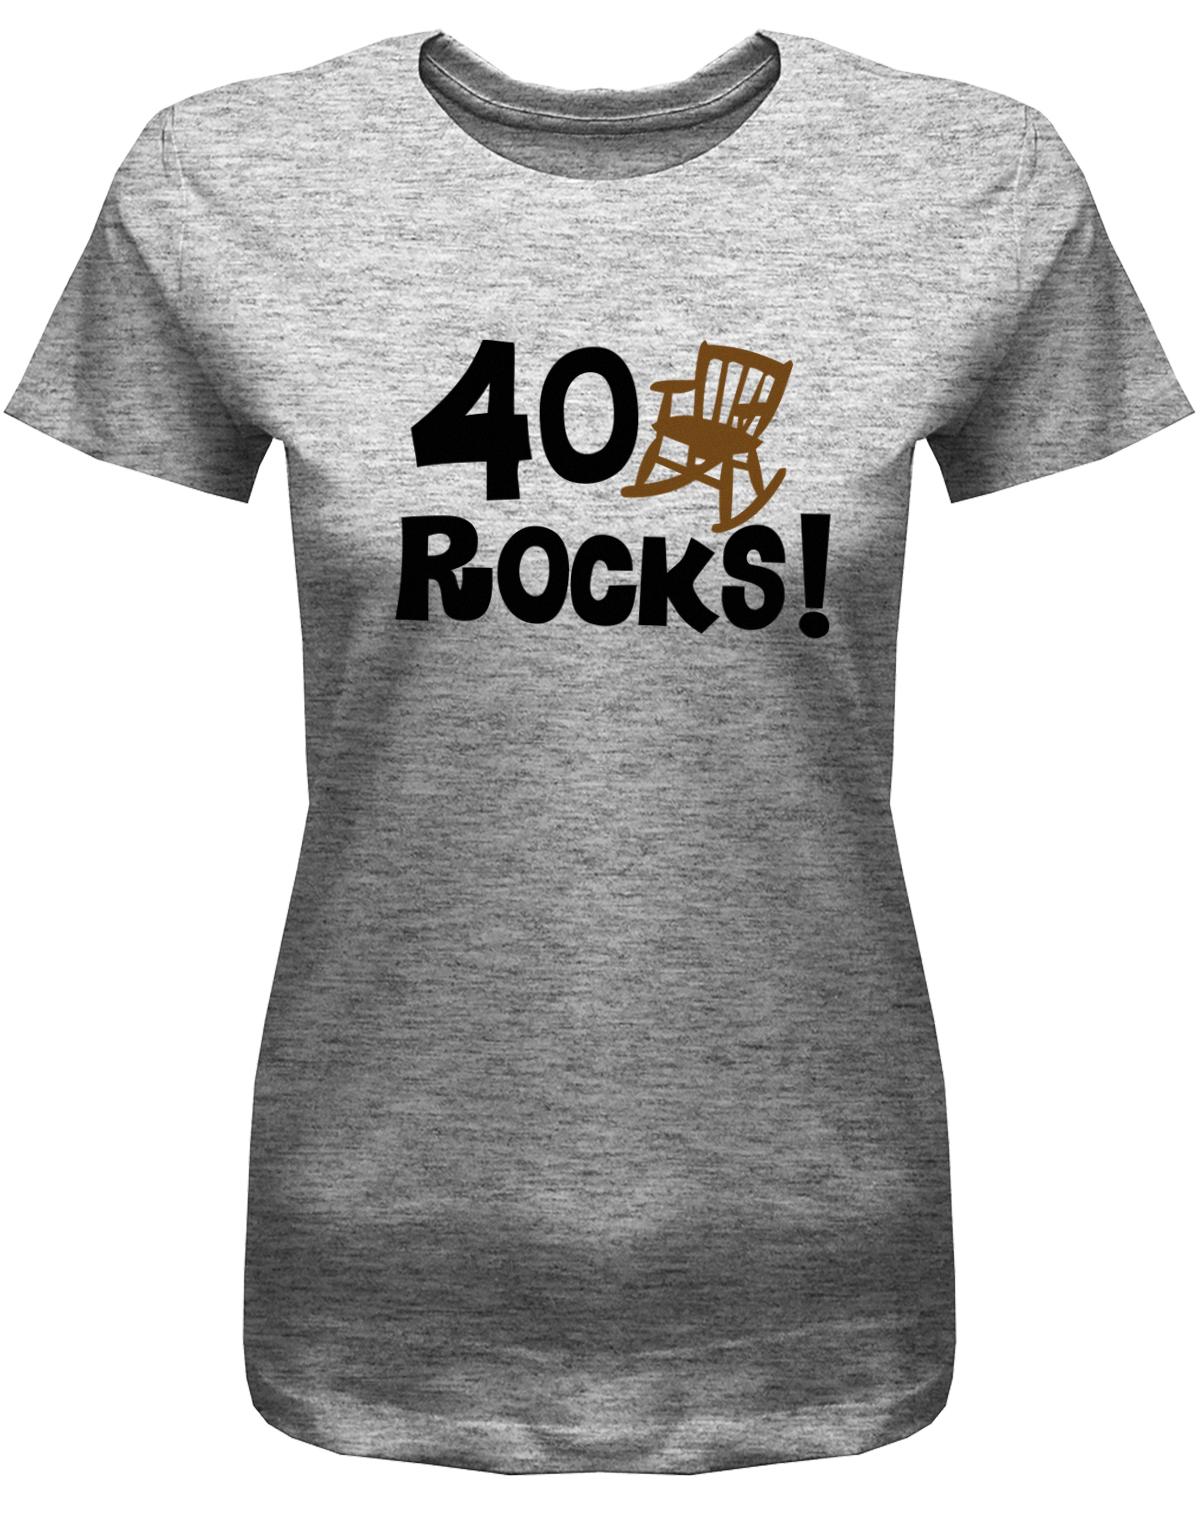 Lustiges T-Shirt zum 40. Geburtstag für die Frau Bedruckt mit 40 rocks Schaukelstuhl. Grau